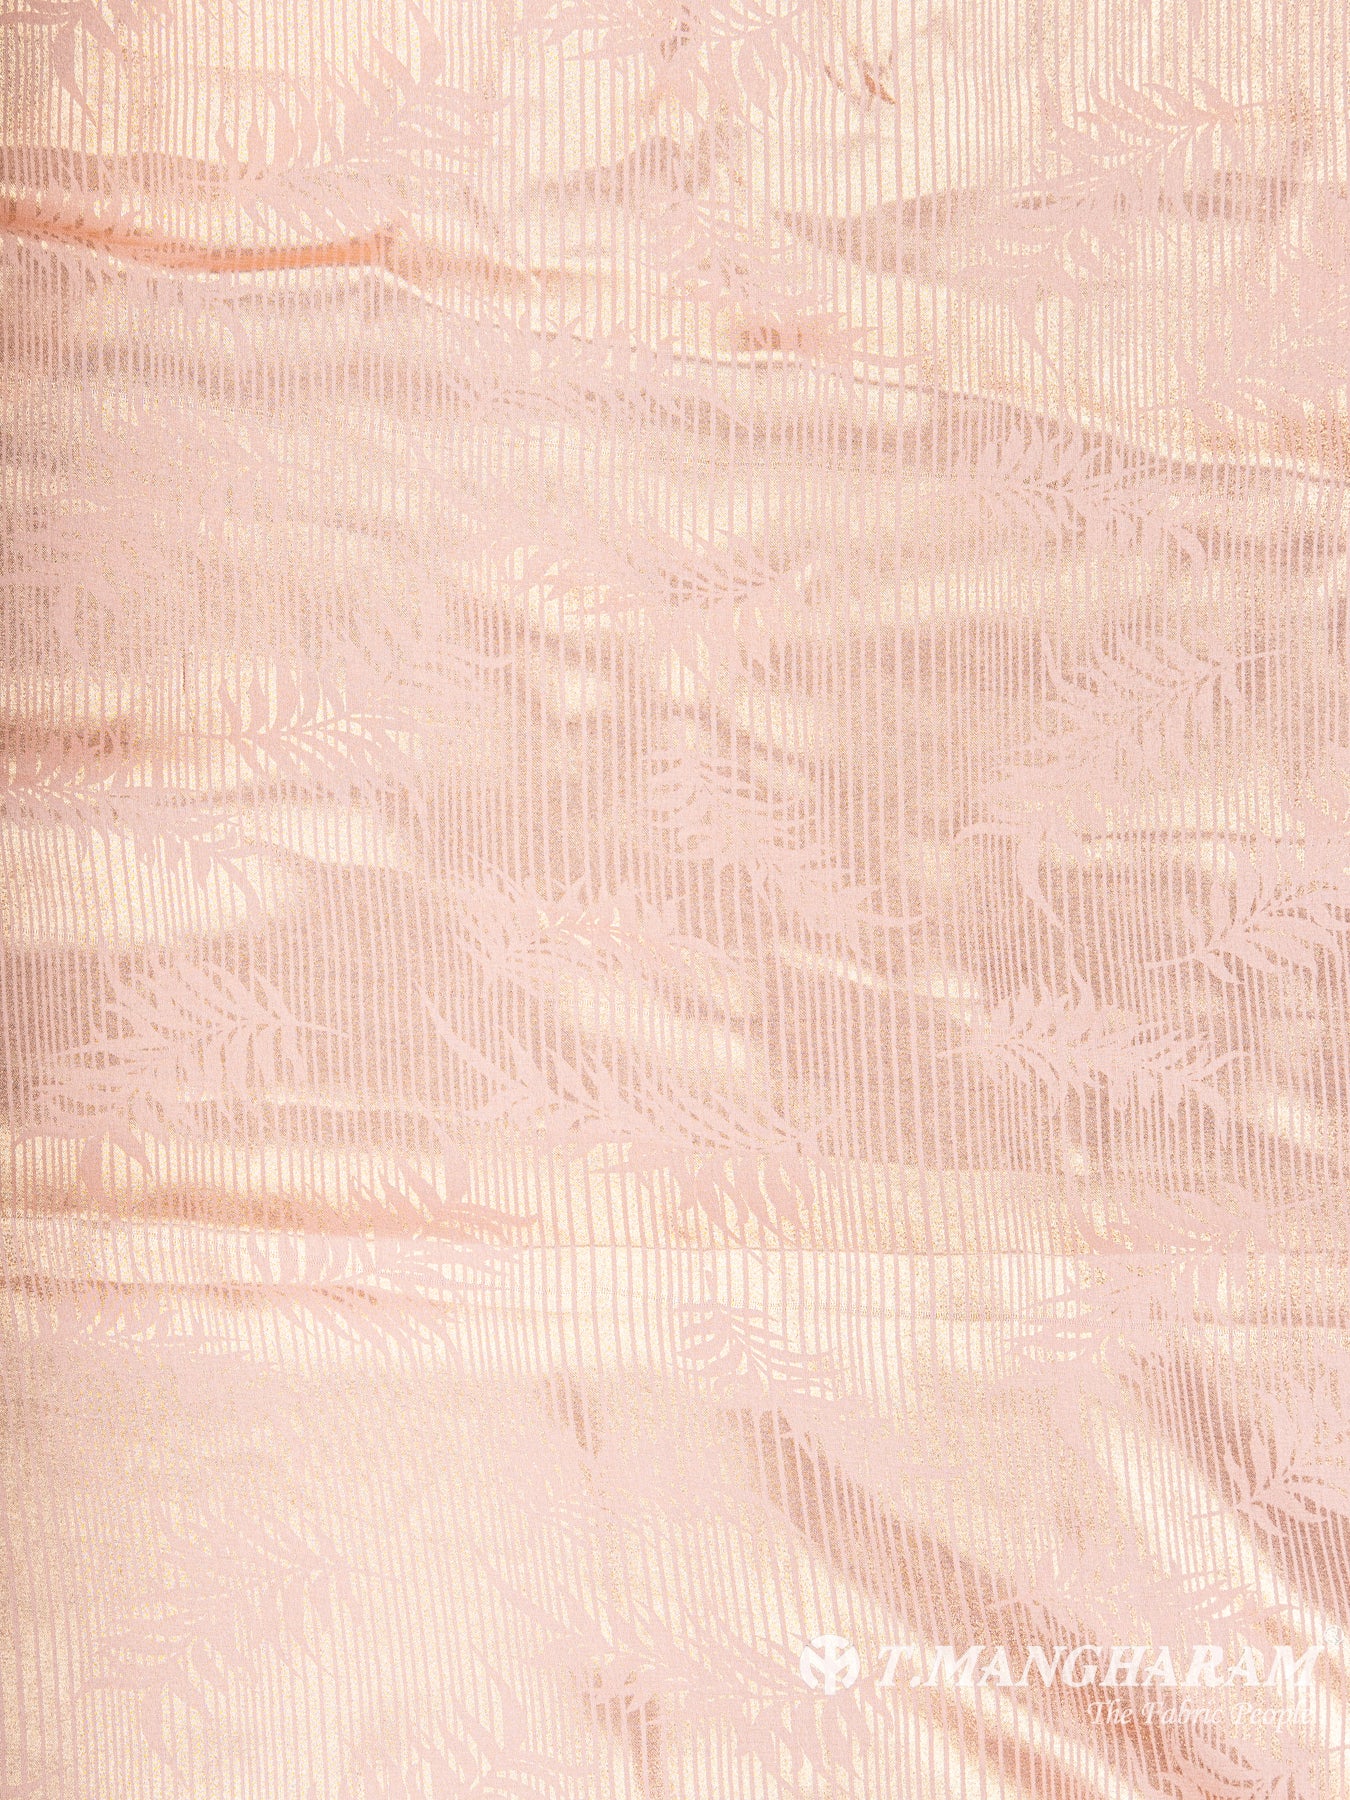 Peach Georgette Satin Fabric - EC5924 view-3